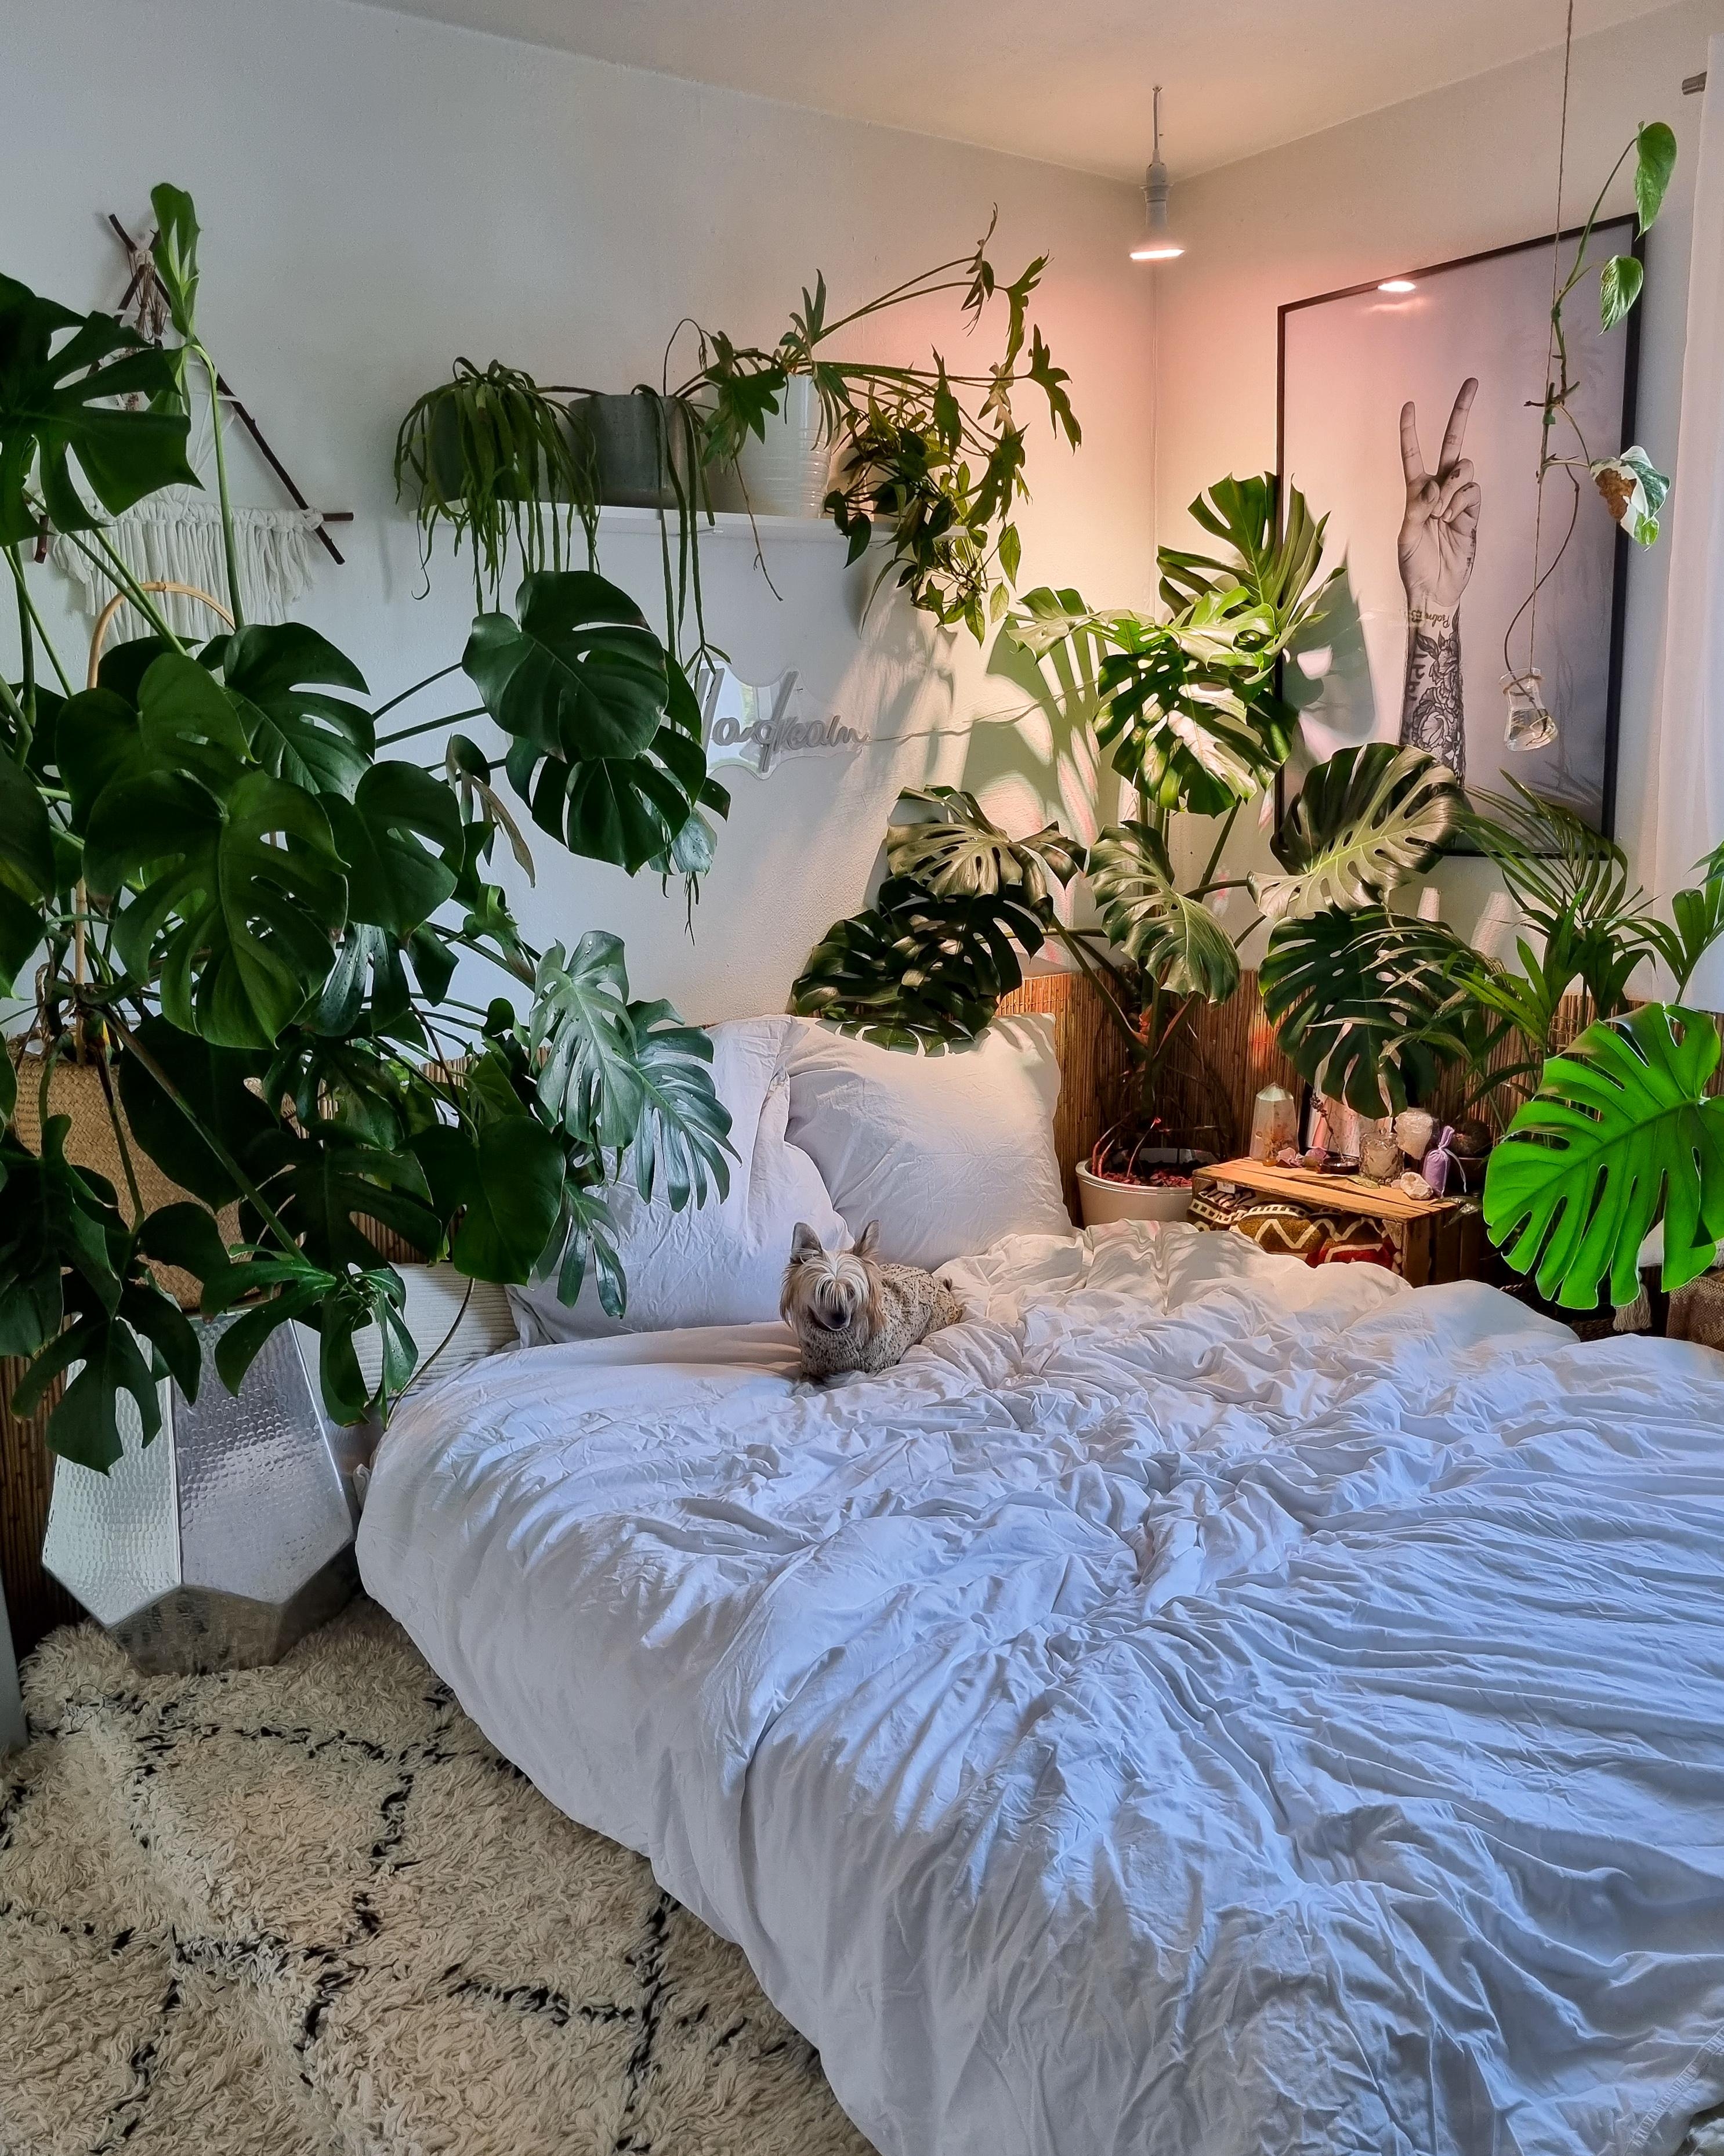 Sonntagsdschungel 🪴🤍✌🏼 #Schlafzimmer #urbanjungle #Pflanzen #monstera #Bett #Bettdecke #Kissen #Teppich #Poster 